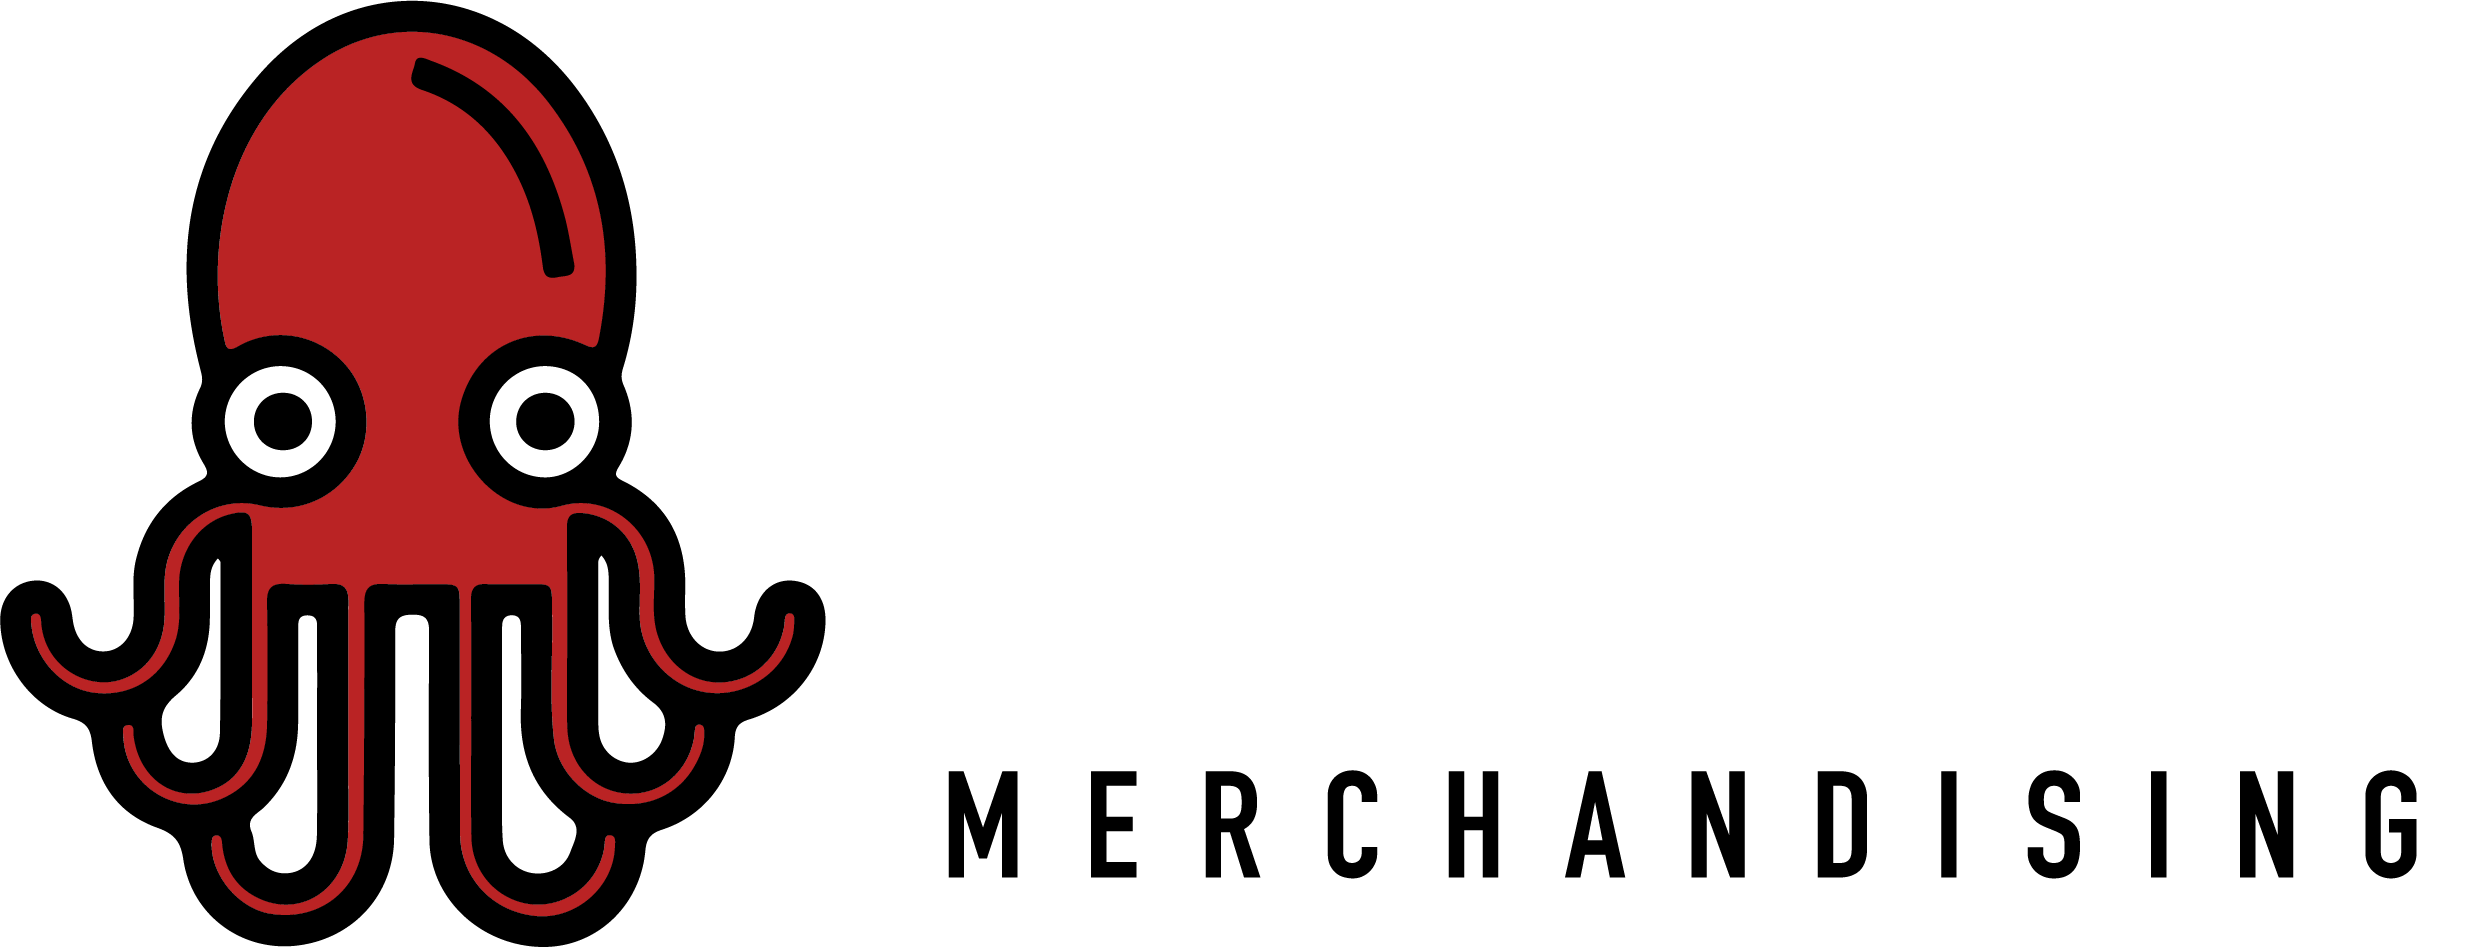 Logo Cracken p fondo rojo